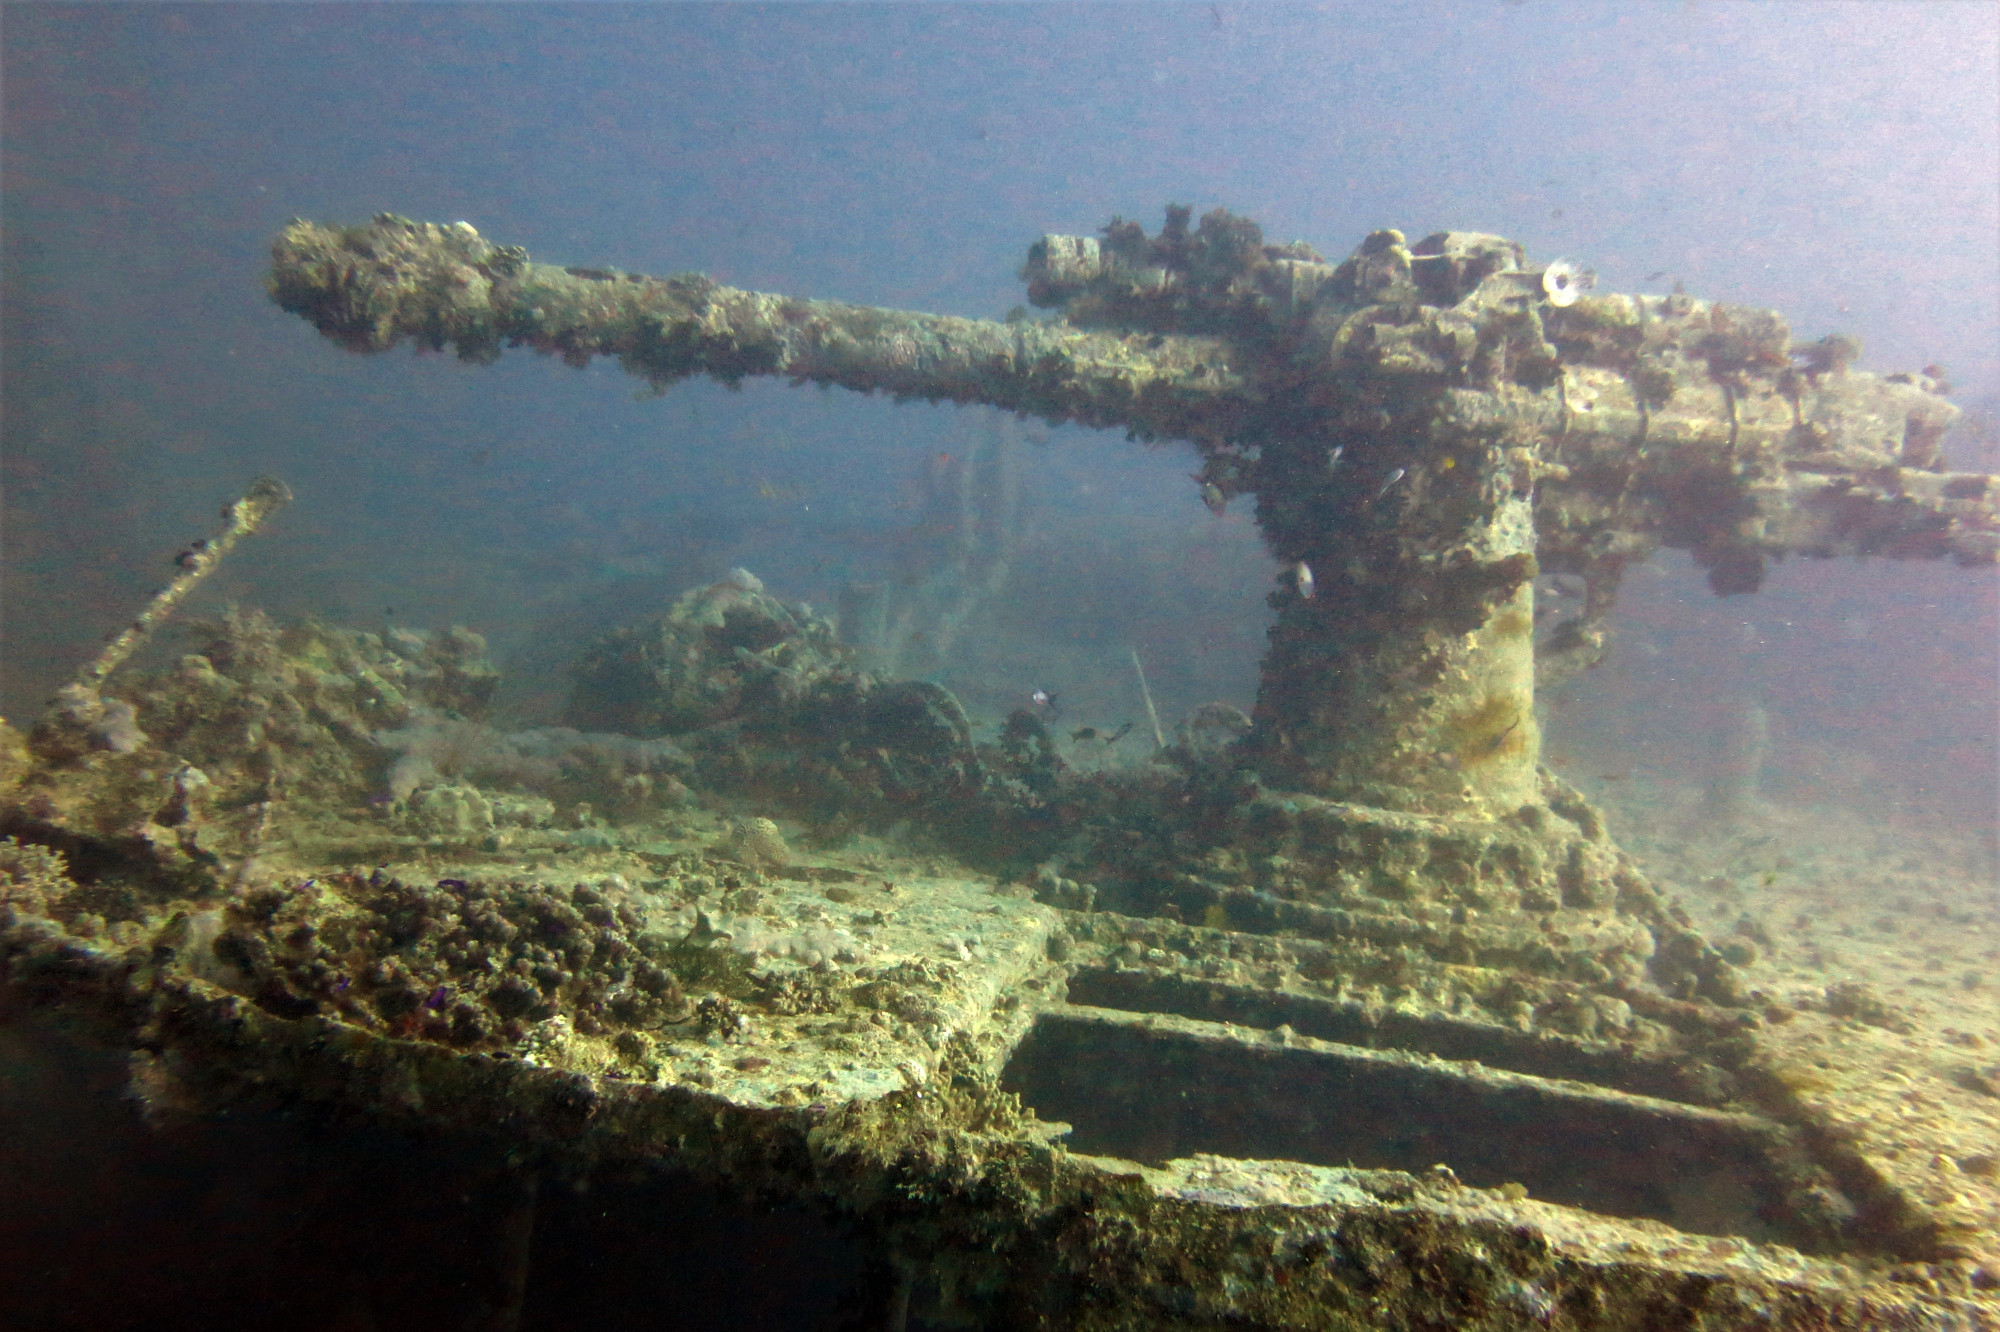 Thistlegorm Wreck, Egypt